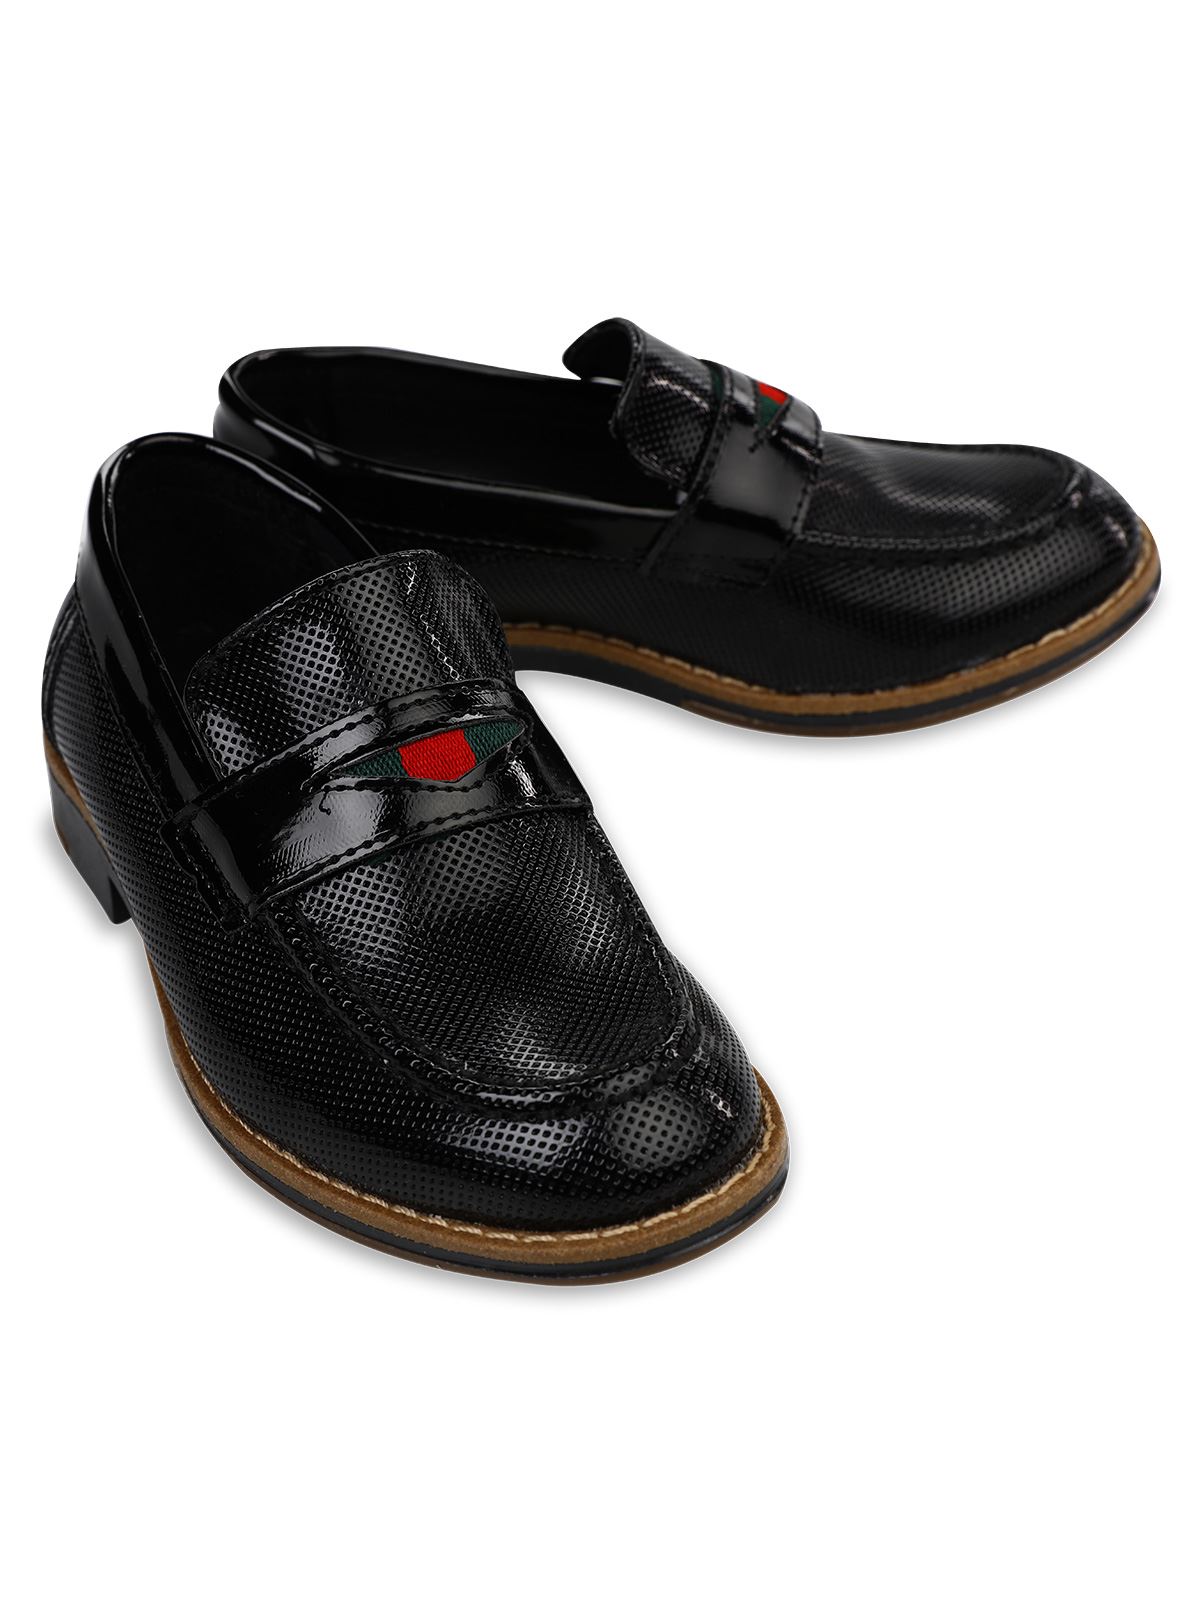 Harli Erkek Çocuk Kısa Topuklu Klasik Ayakkabı 26-30 Numara Siyah